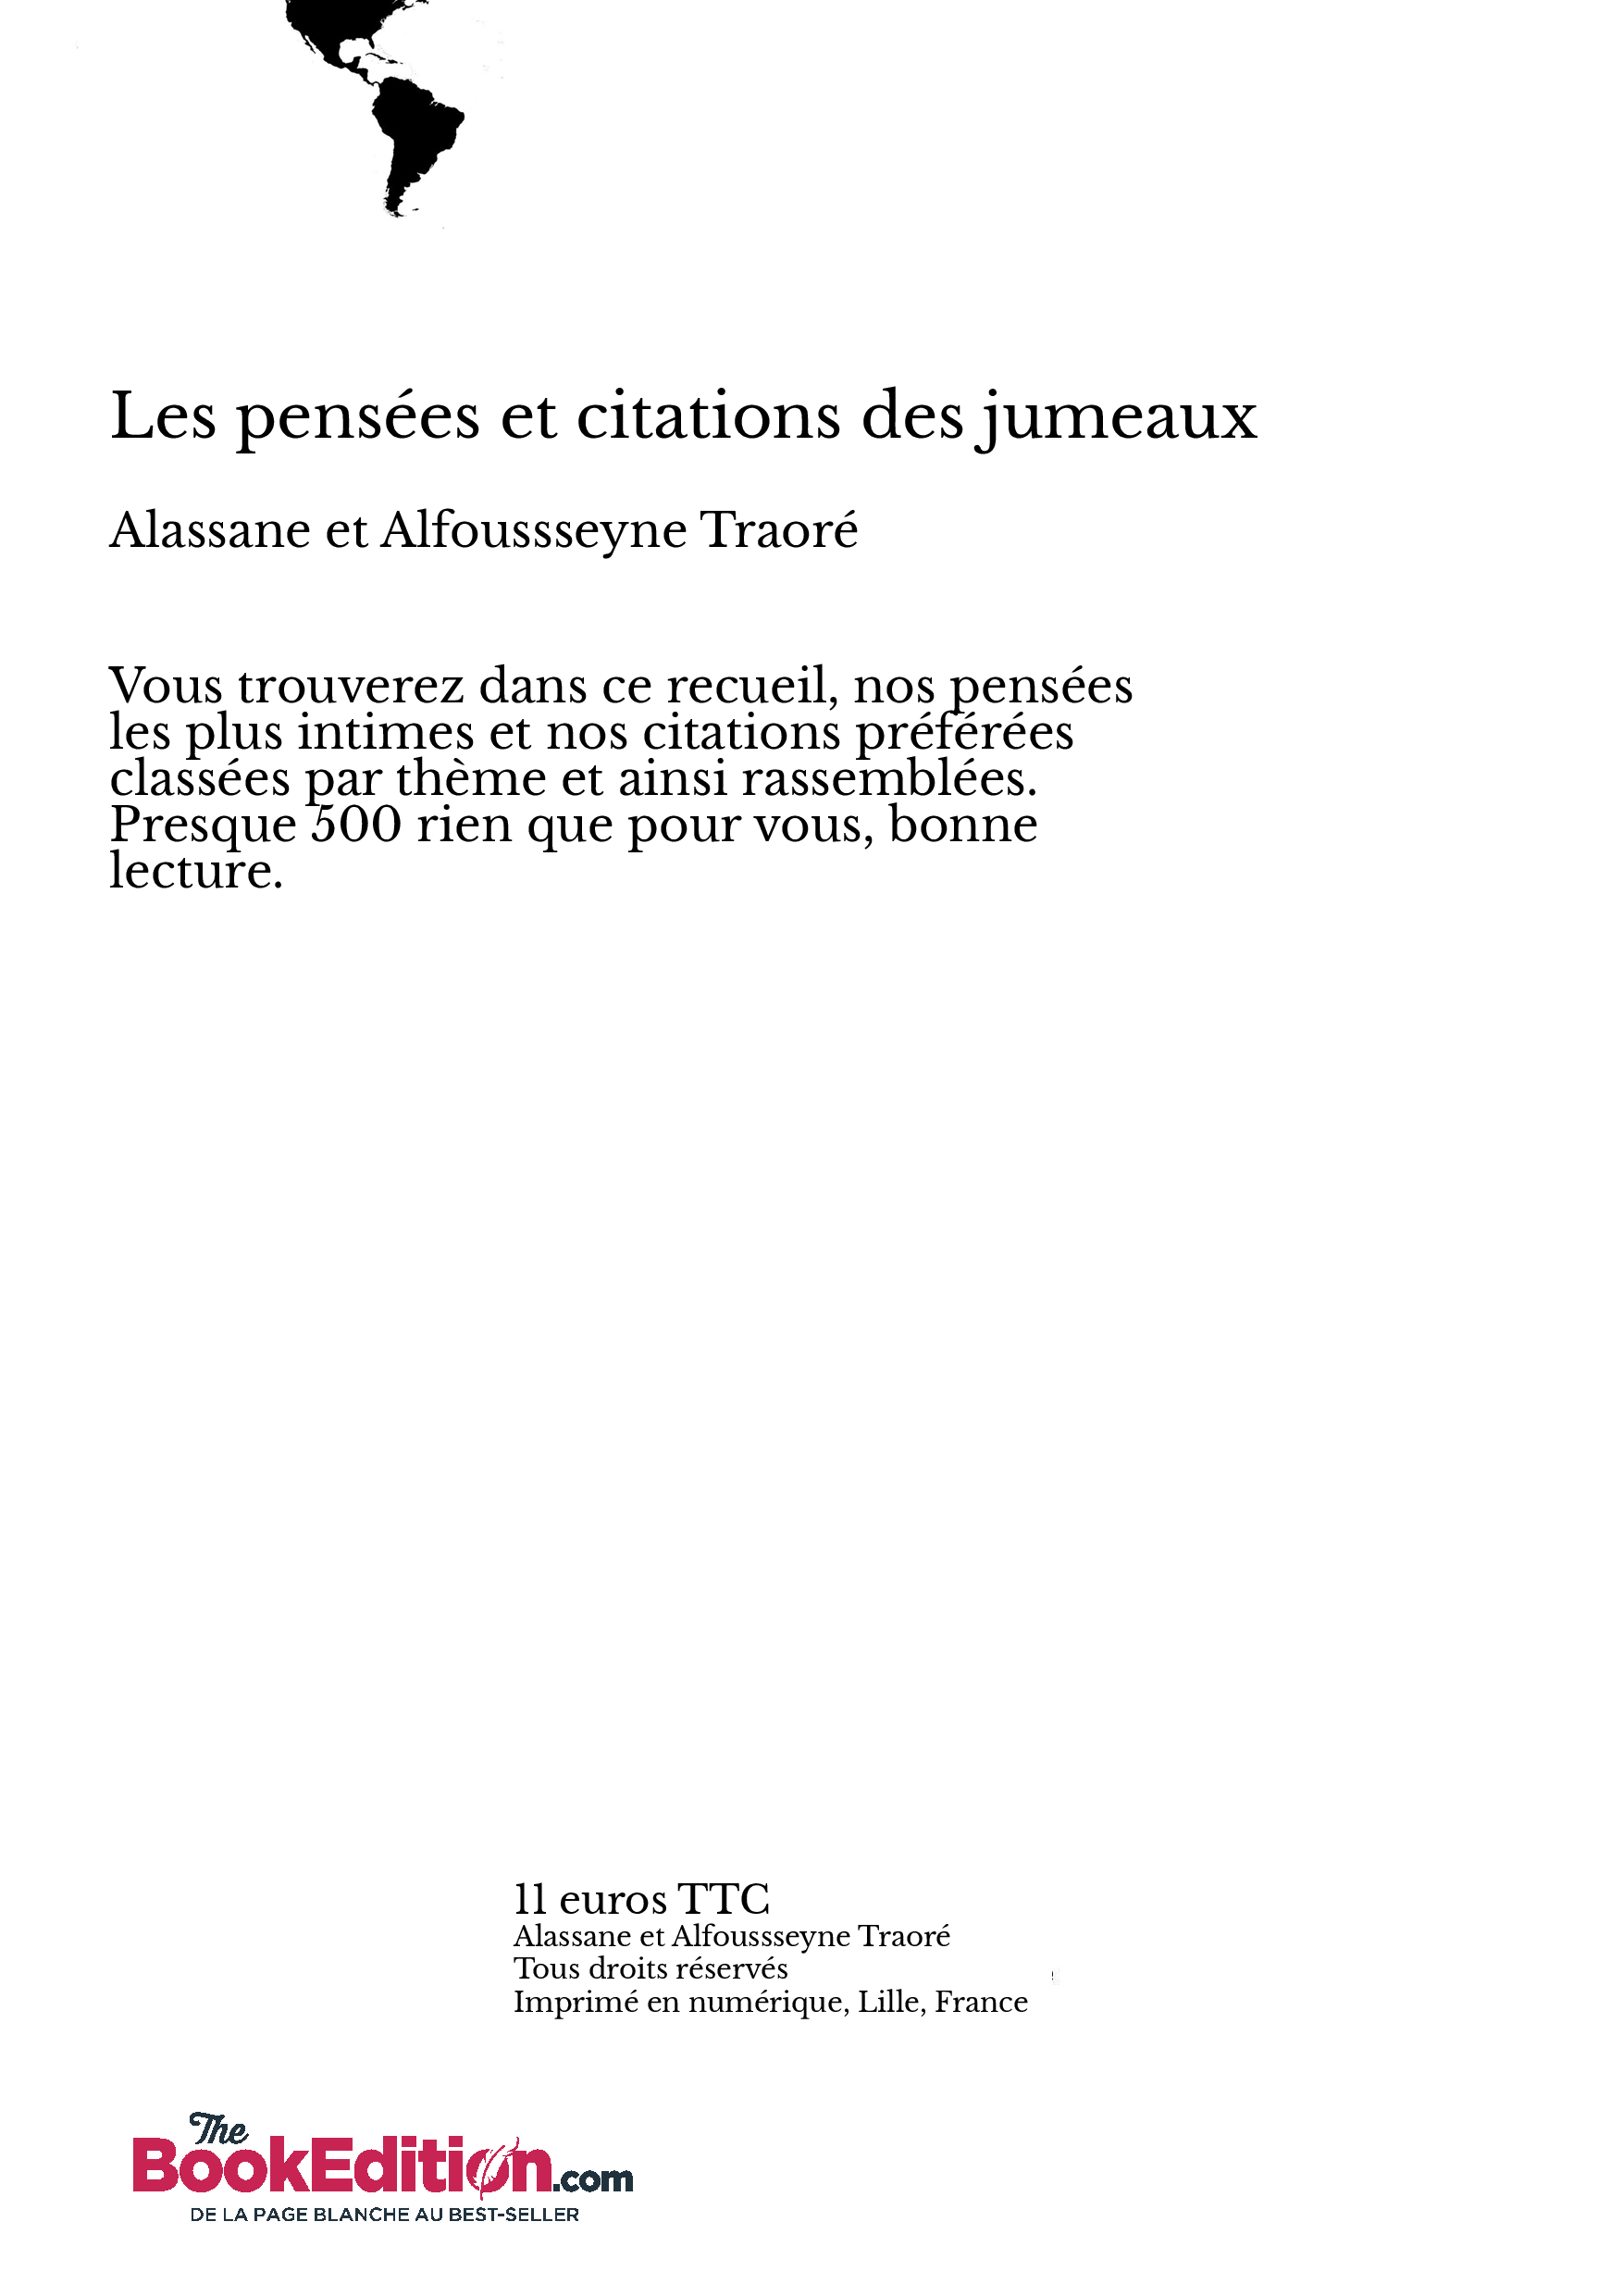 Les Pensees Et Citations Des Jumeaux Jean Luc Le Creurer